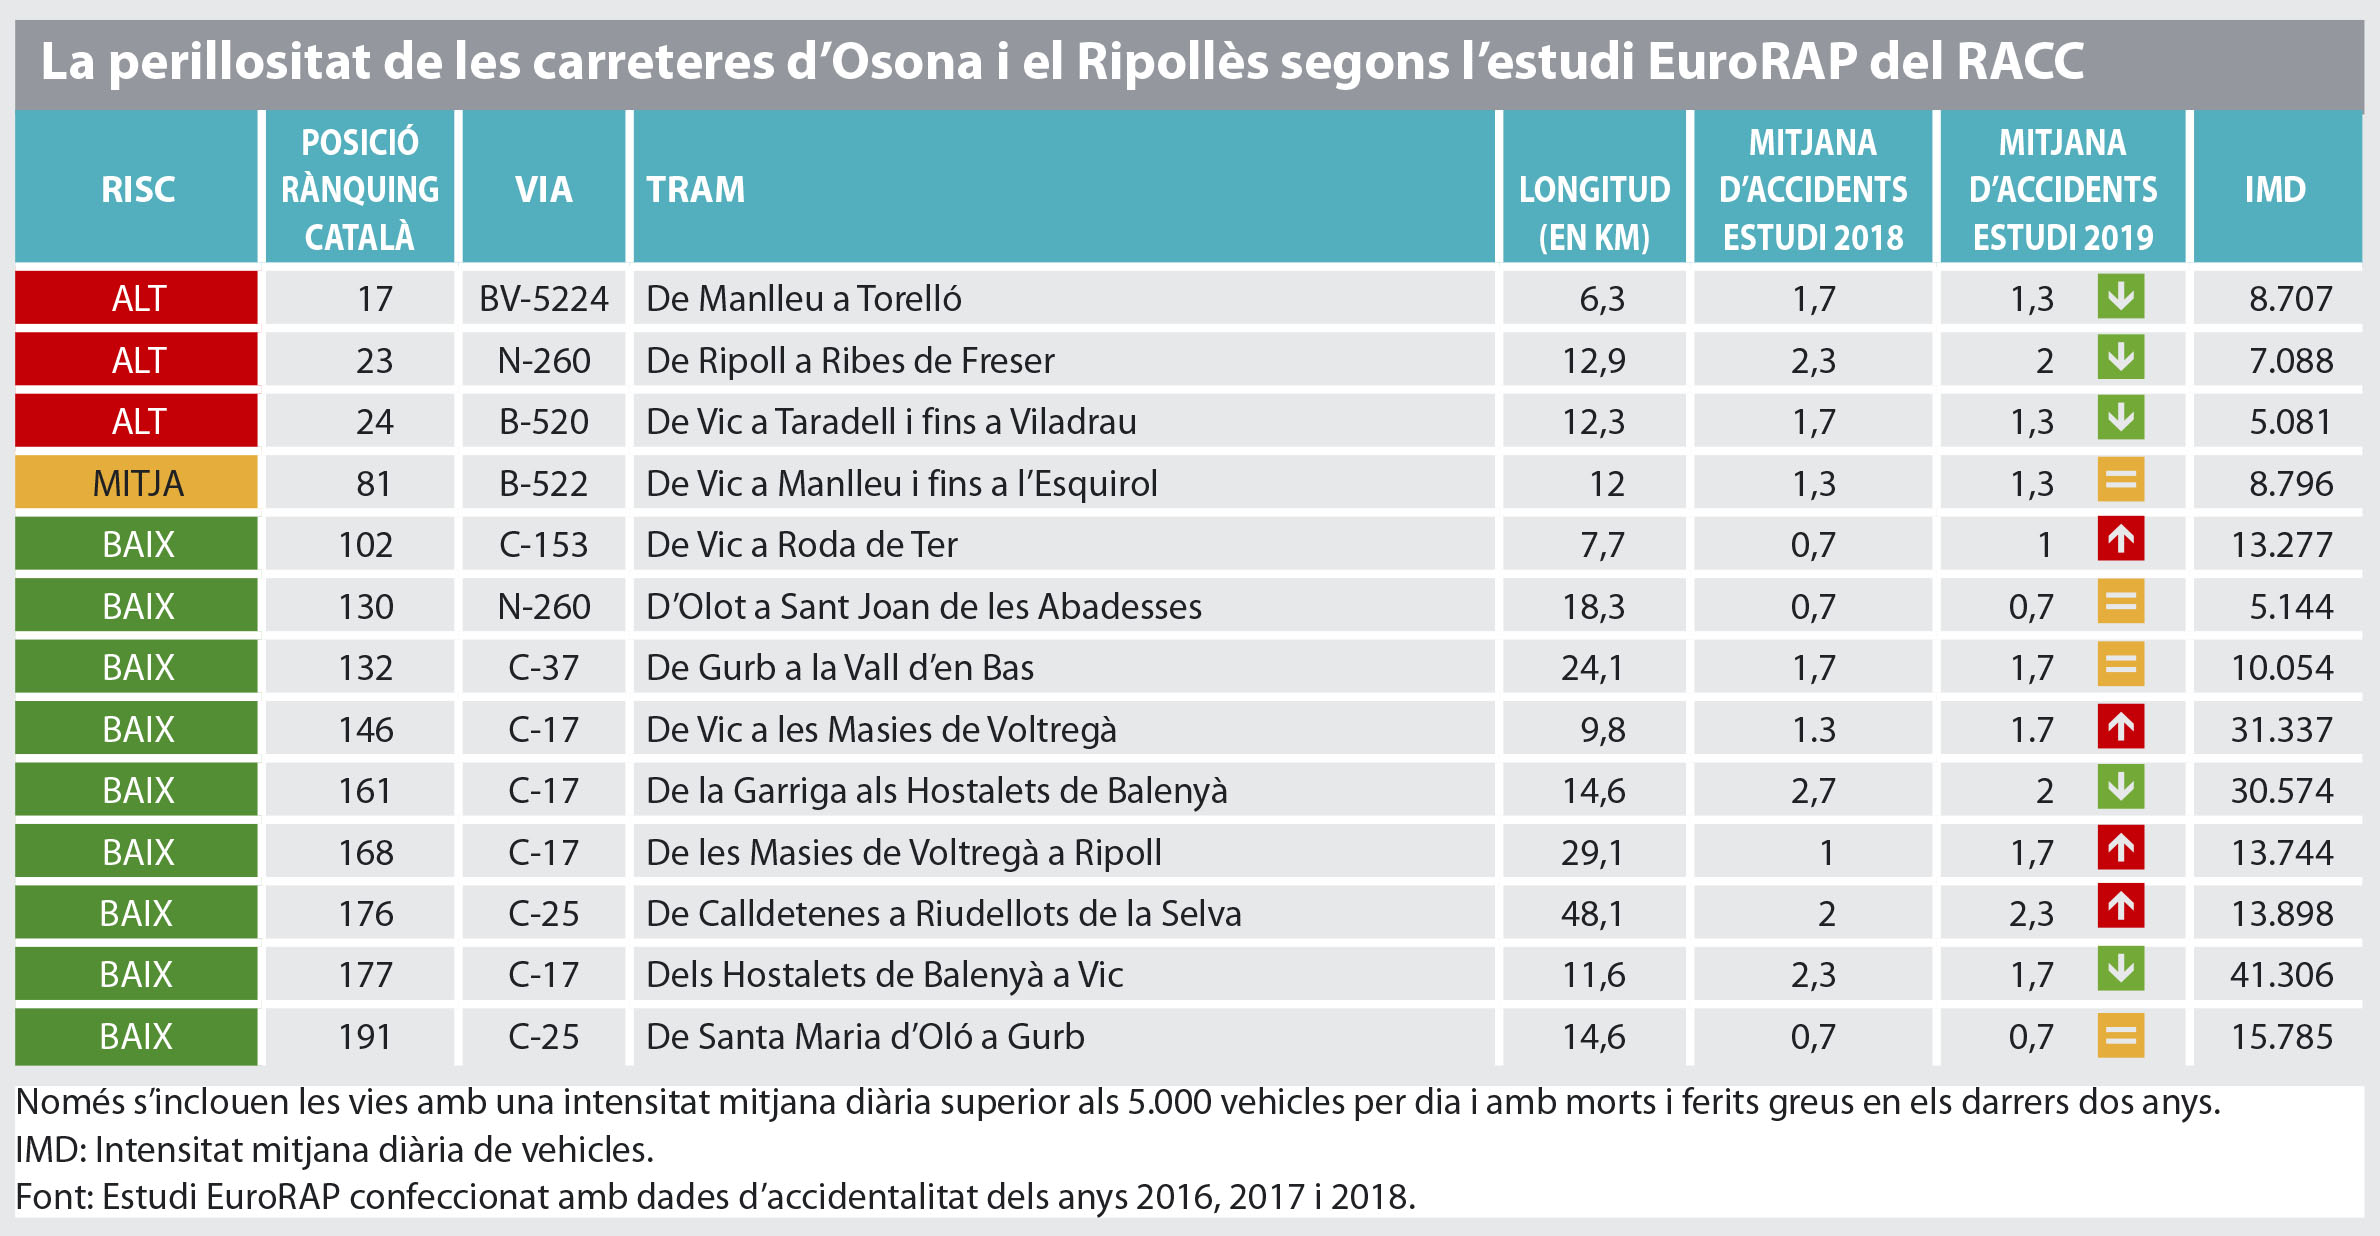 Les carreteres d'Osona i el Ripollès que apareixen en l'informe EuroRAP